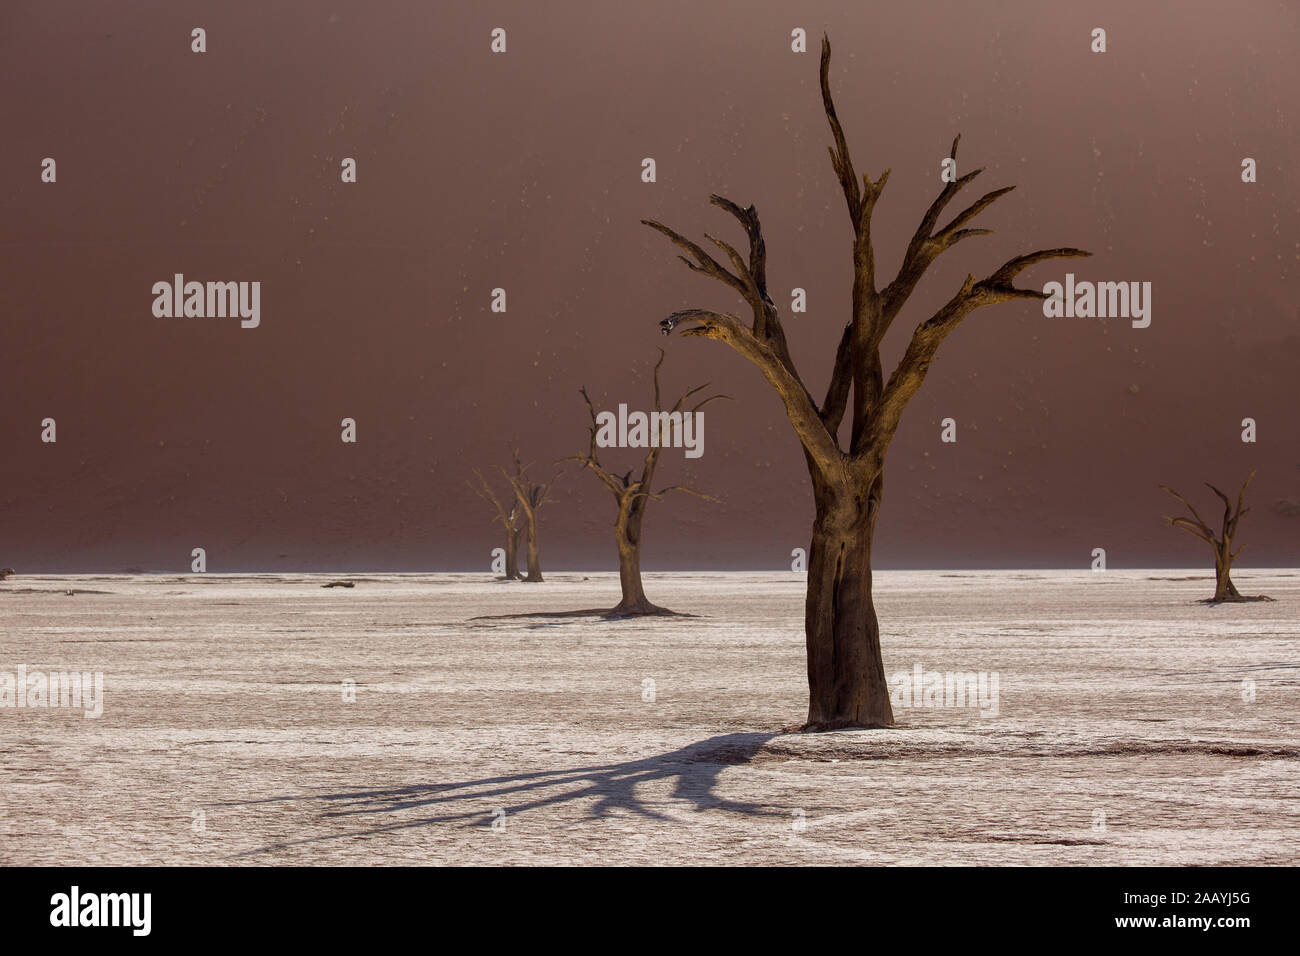 Siluetas de árboles centenarios en seco en el desierto entre dunas de arena roja. Inusual paisaje alienígena surrealista con esqueletos de árboles muertos. Deadvlei, NA Foto de stock